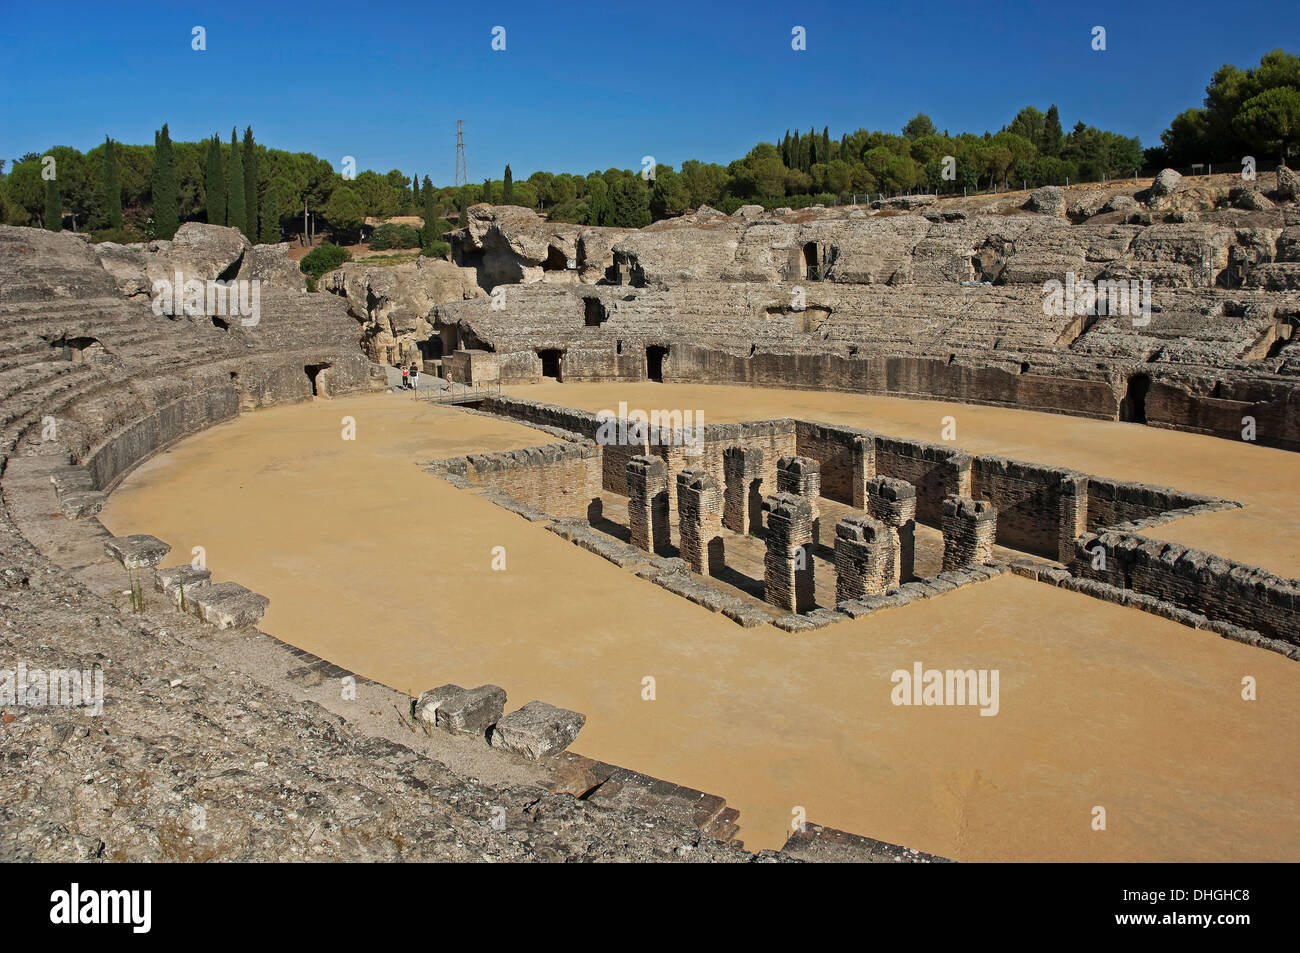 Amphitheater, römischen Ruinen von Itálica des 2. Jahrhunderts, Santiponce, Provinz Sevilla, Region von Andalusien, Spanien, Europa Stockfoto